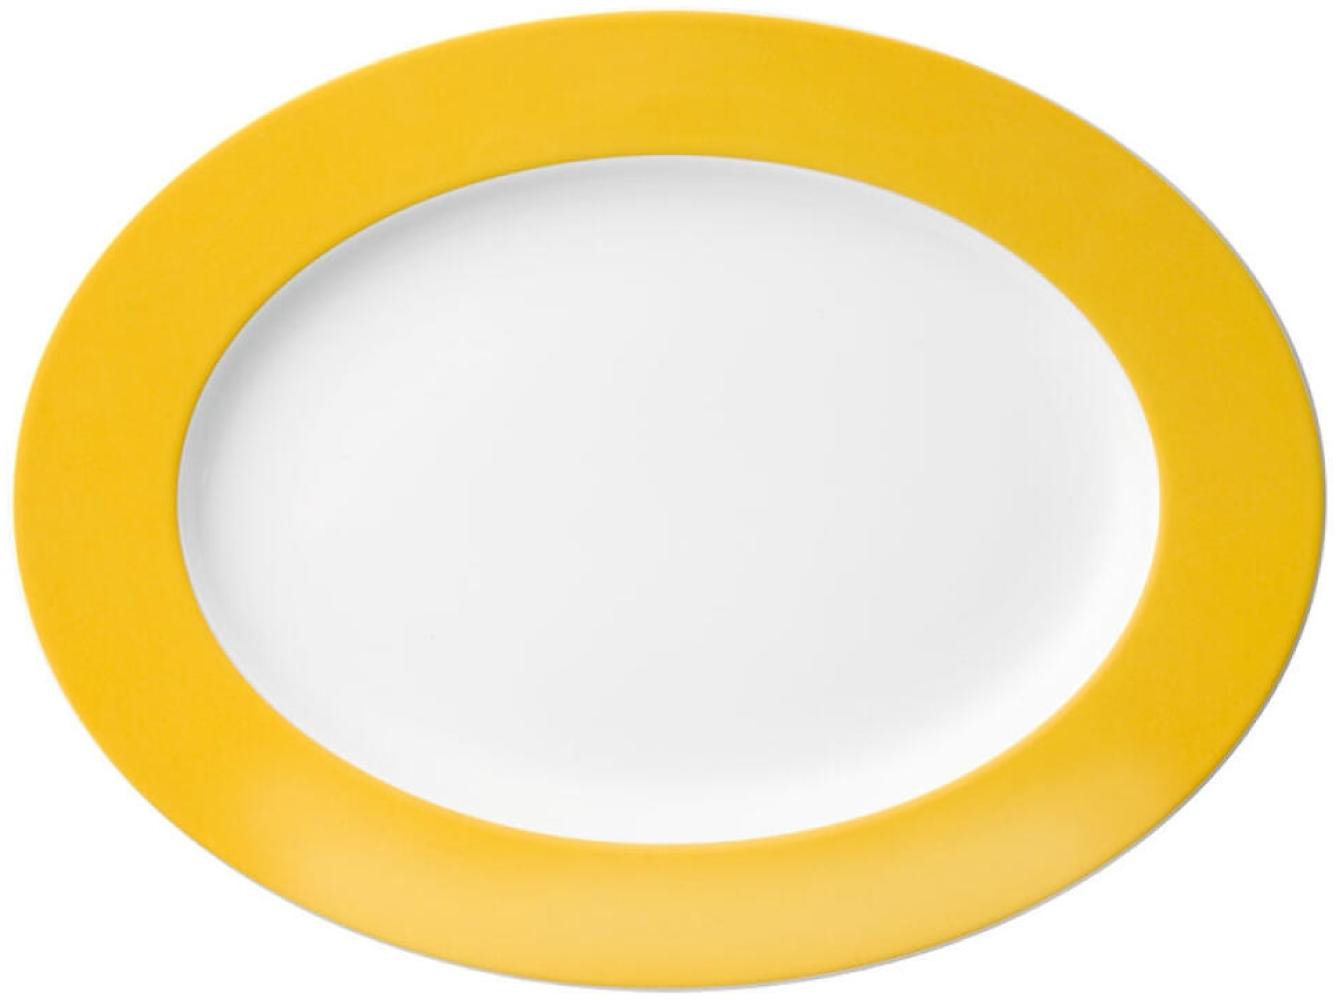 Thomas Sunny Day Platte, Servierplatte, Beilagenplatte, Porzellan, Yellow / Gelb, Spülmaschinenfest, 33 cm, 12733 Bild 1